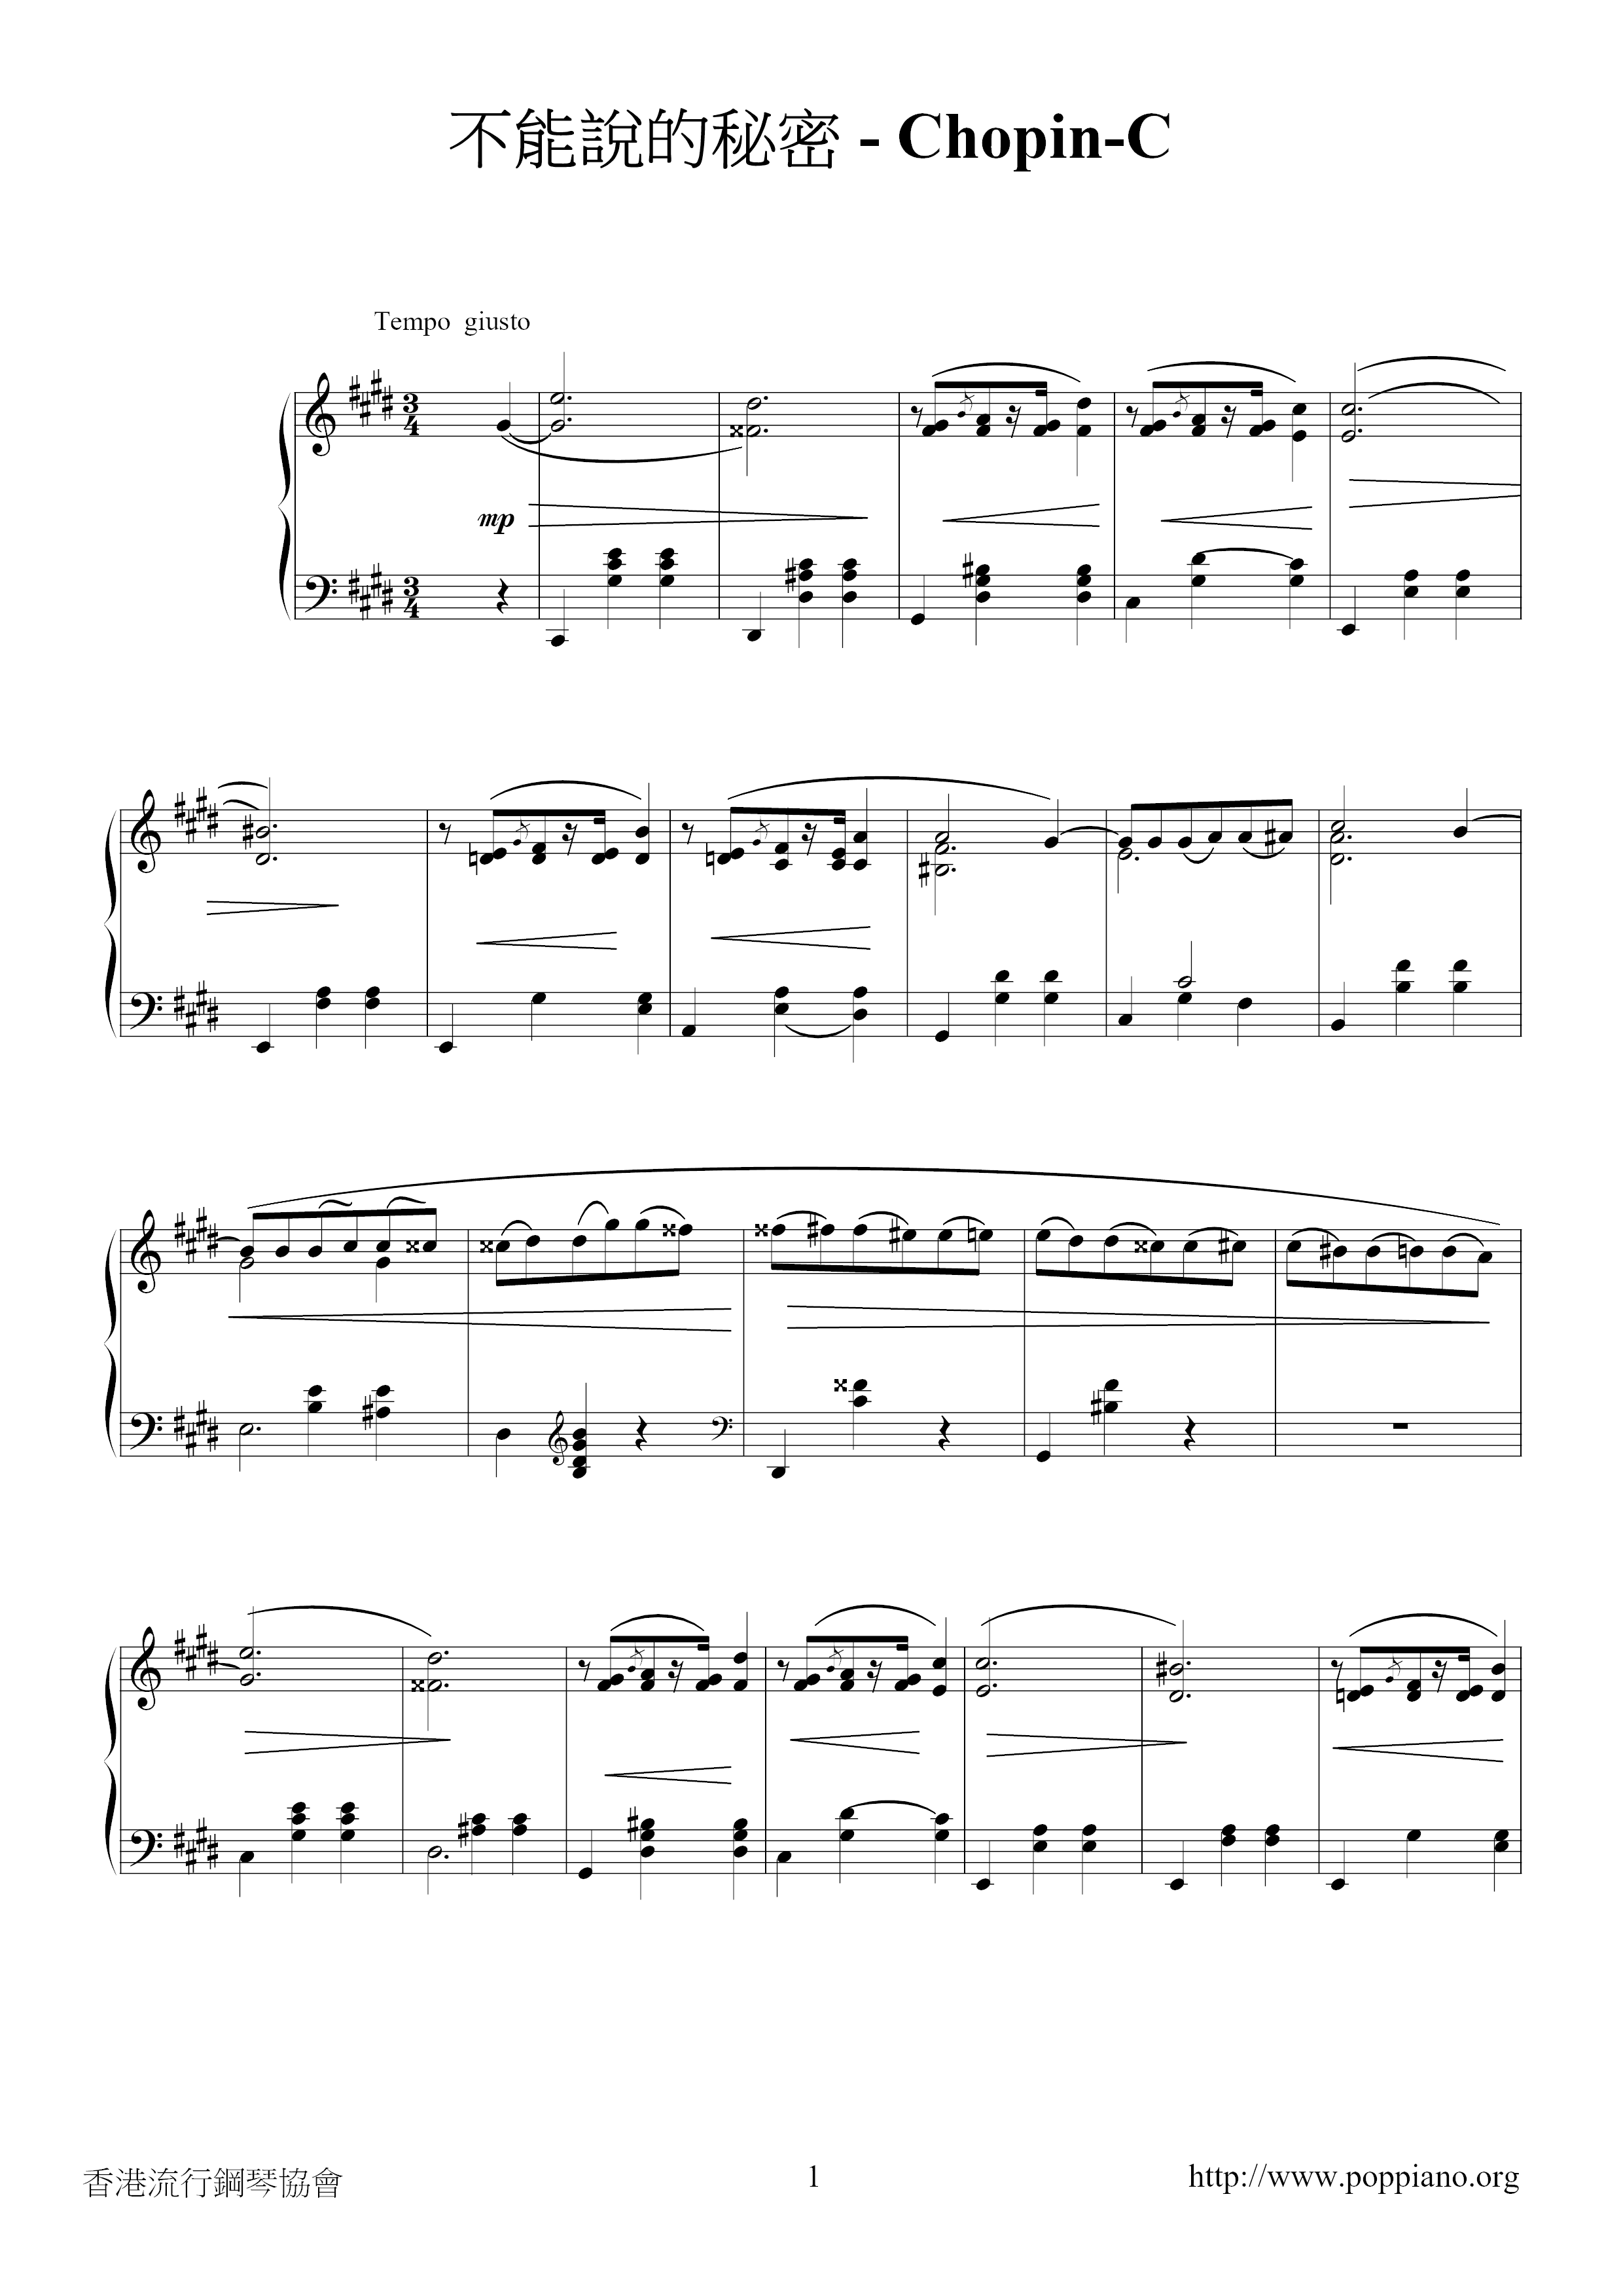 Op.64-2, Waltz No.7 Secret That Cannot Be Said 2 Score